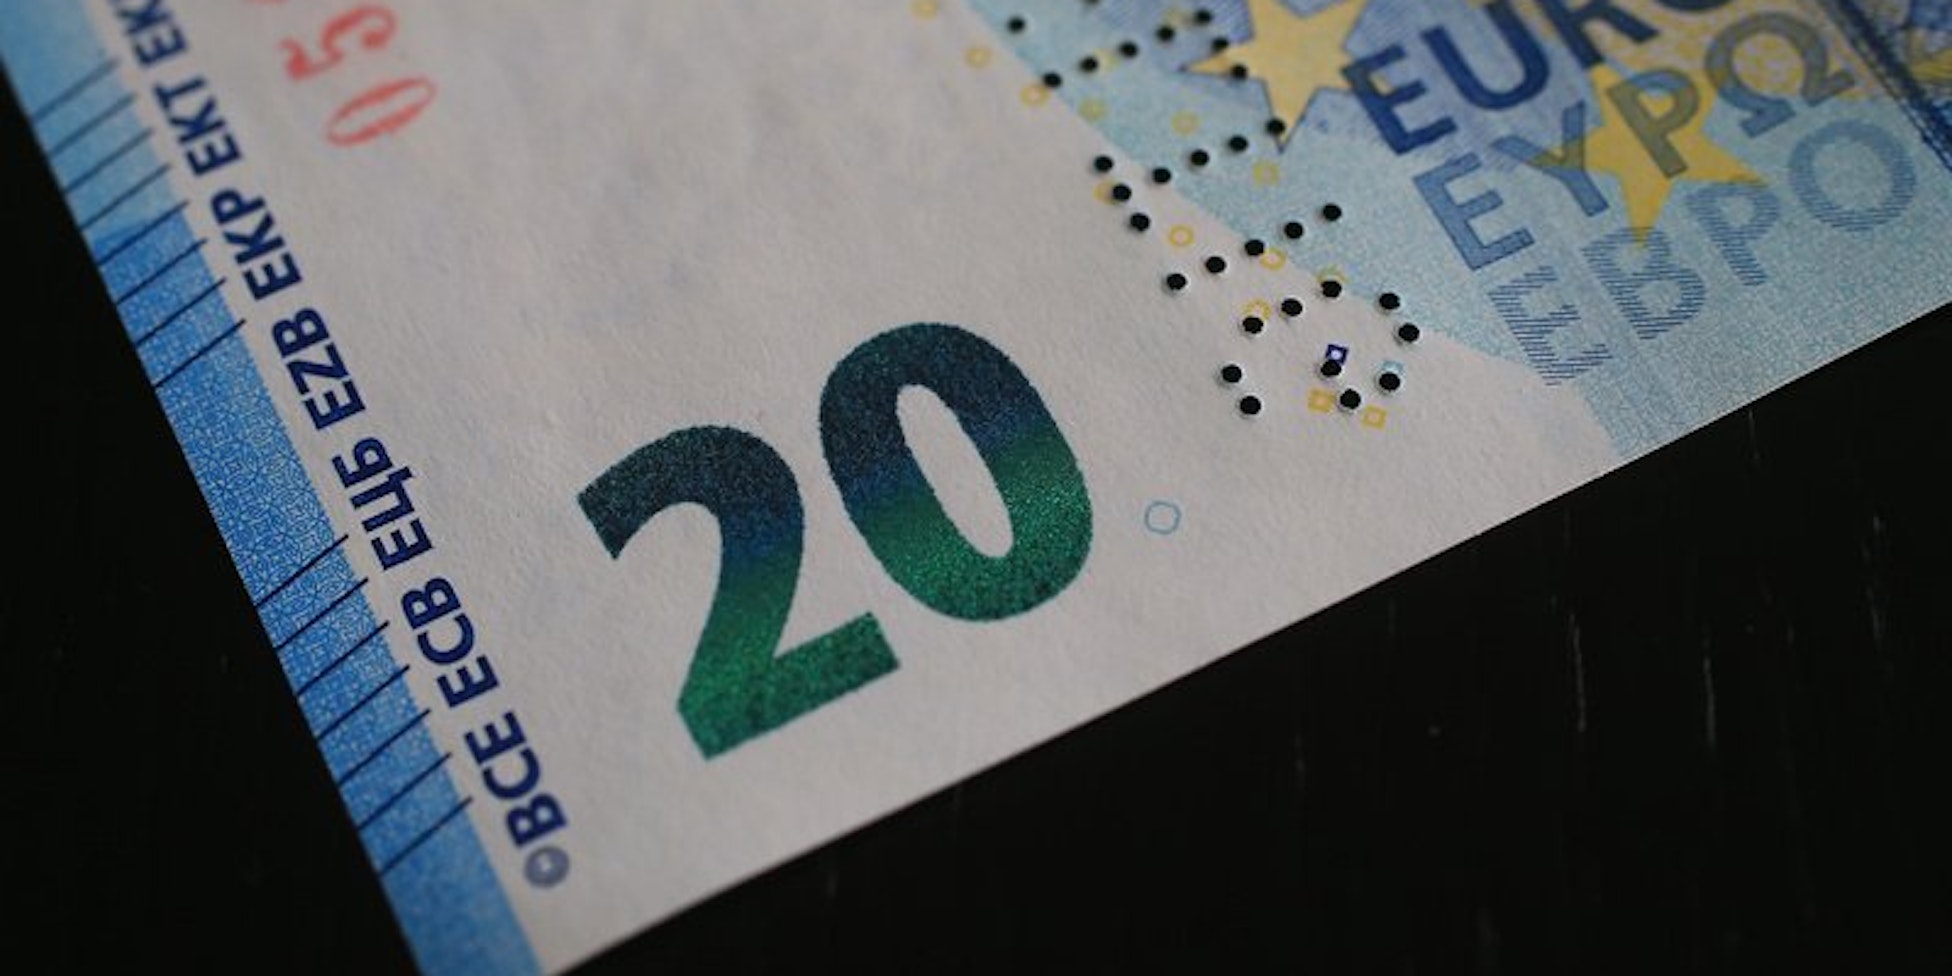 Am 25. November 2015 kommt der Nachfolger des 20-Euro-Scheins auf den Markt. Die verbesserte Variante der Banknote soll vor allem schwerer zu fälschen sein.